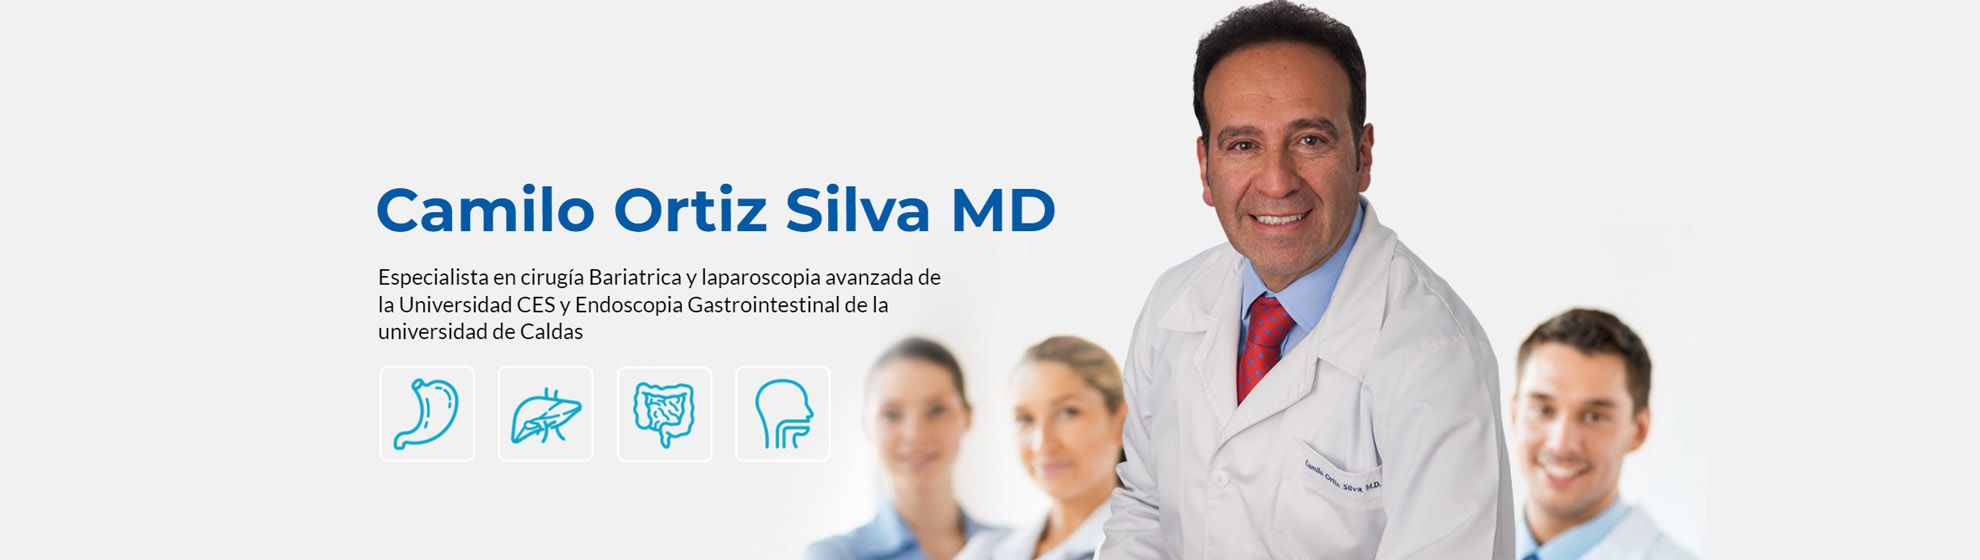 Dr. Camilo Ortiz Silva